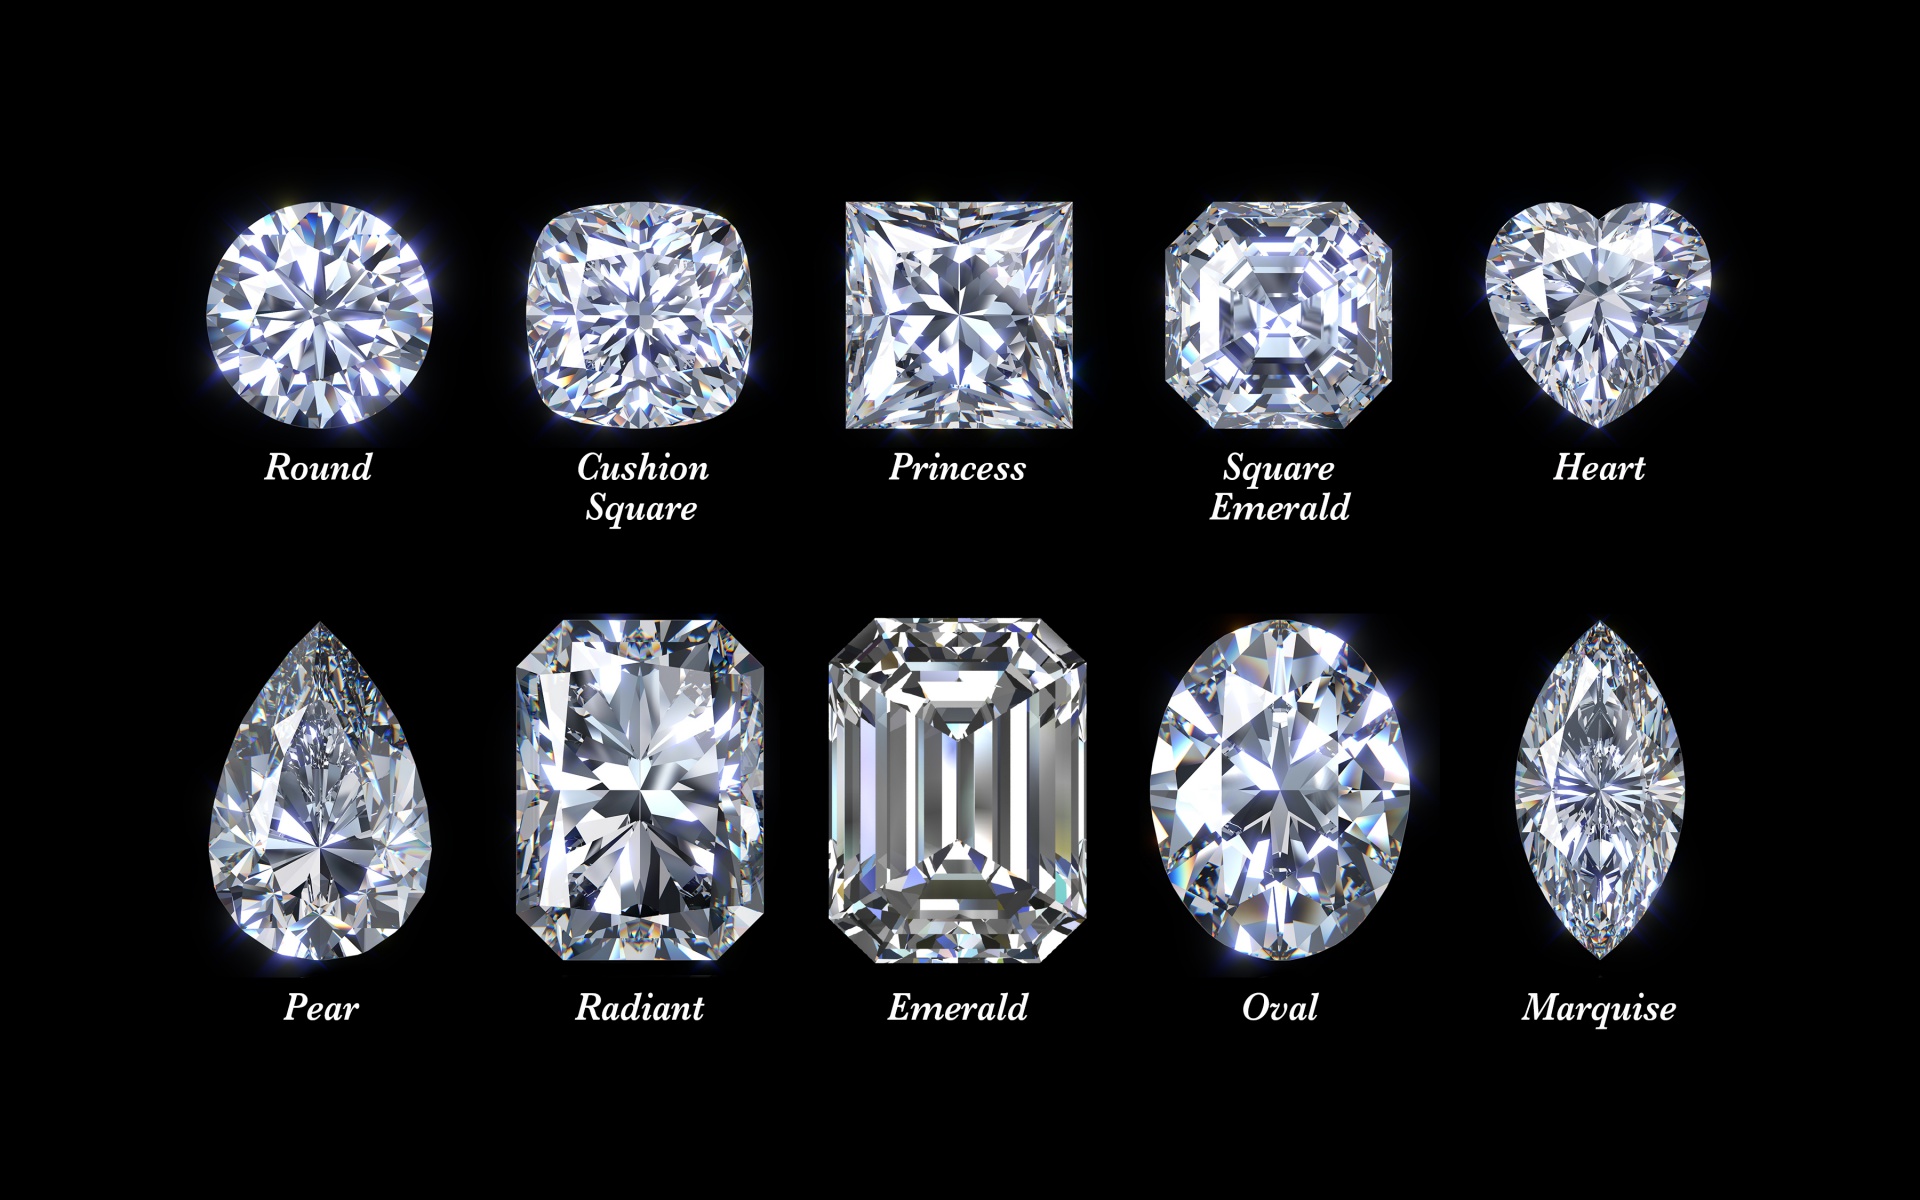 remember-diamonds-are-created-under-pressure-quote-diamonds